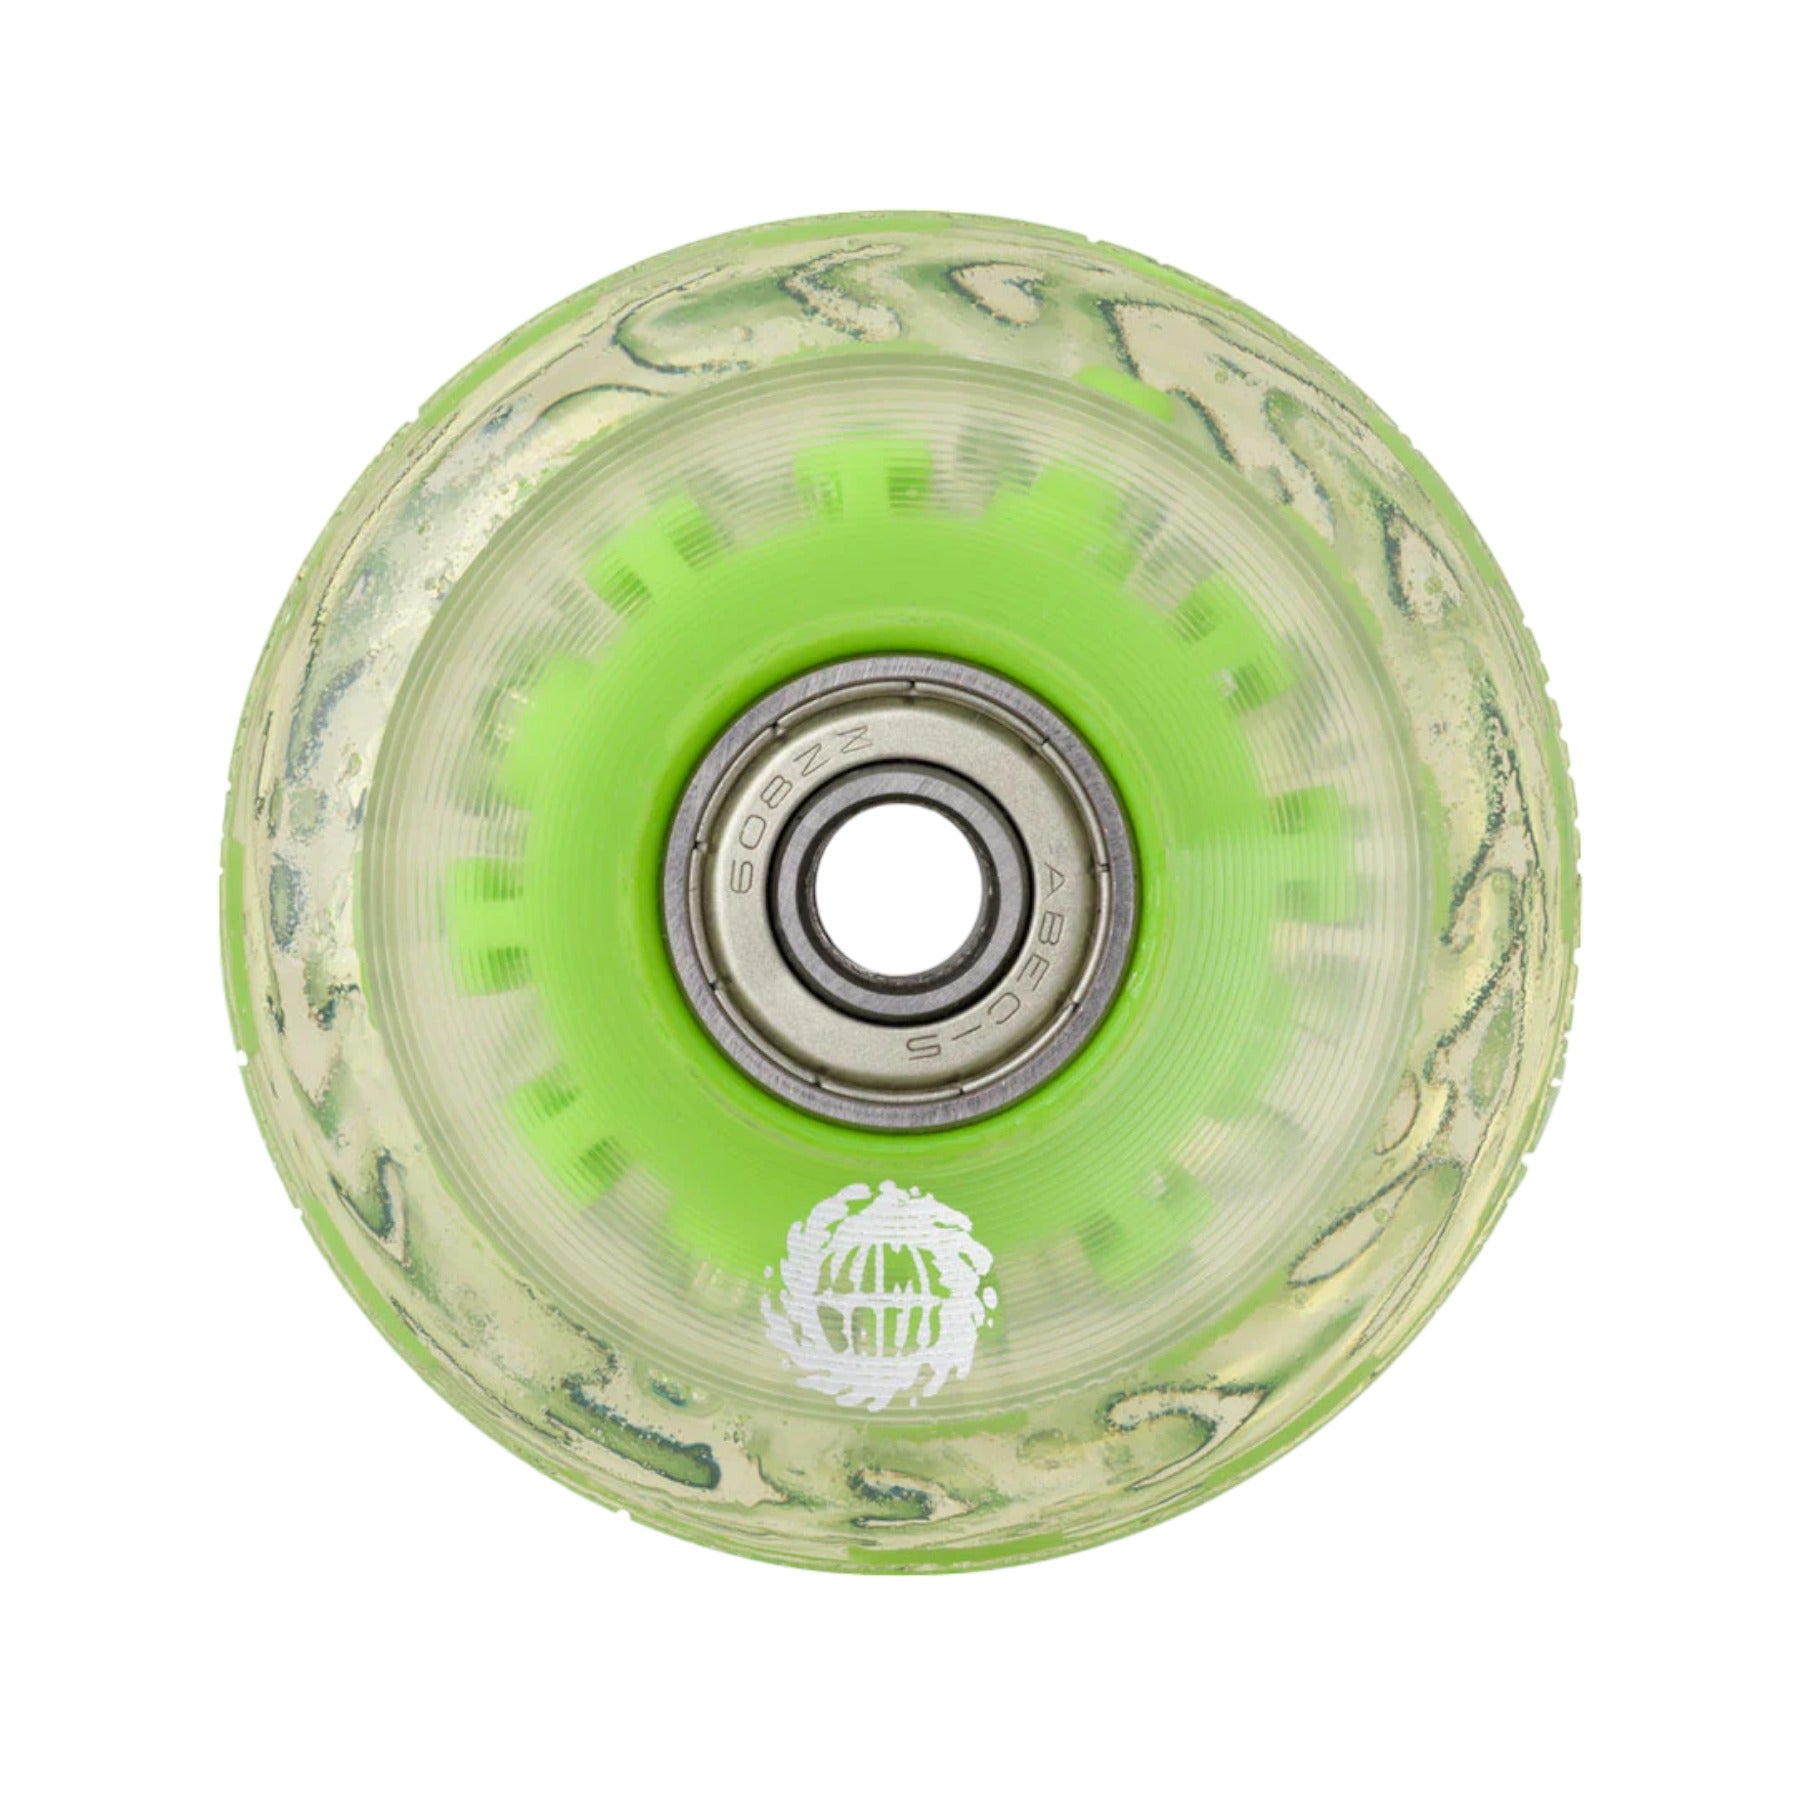 Slime Balls Light Ups OG Smile 78A Wheels